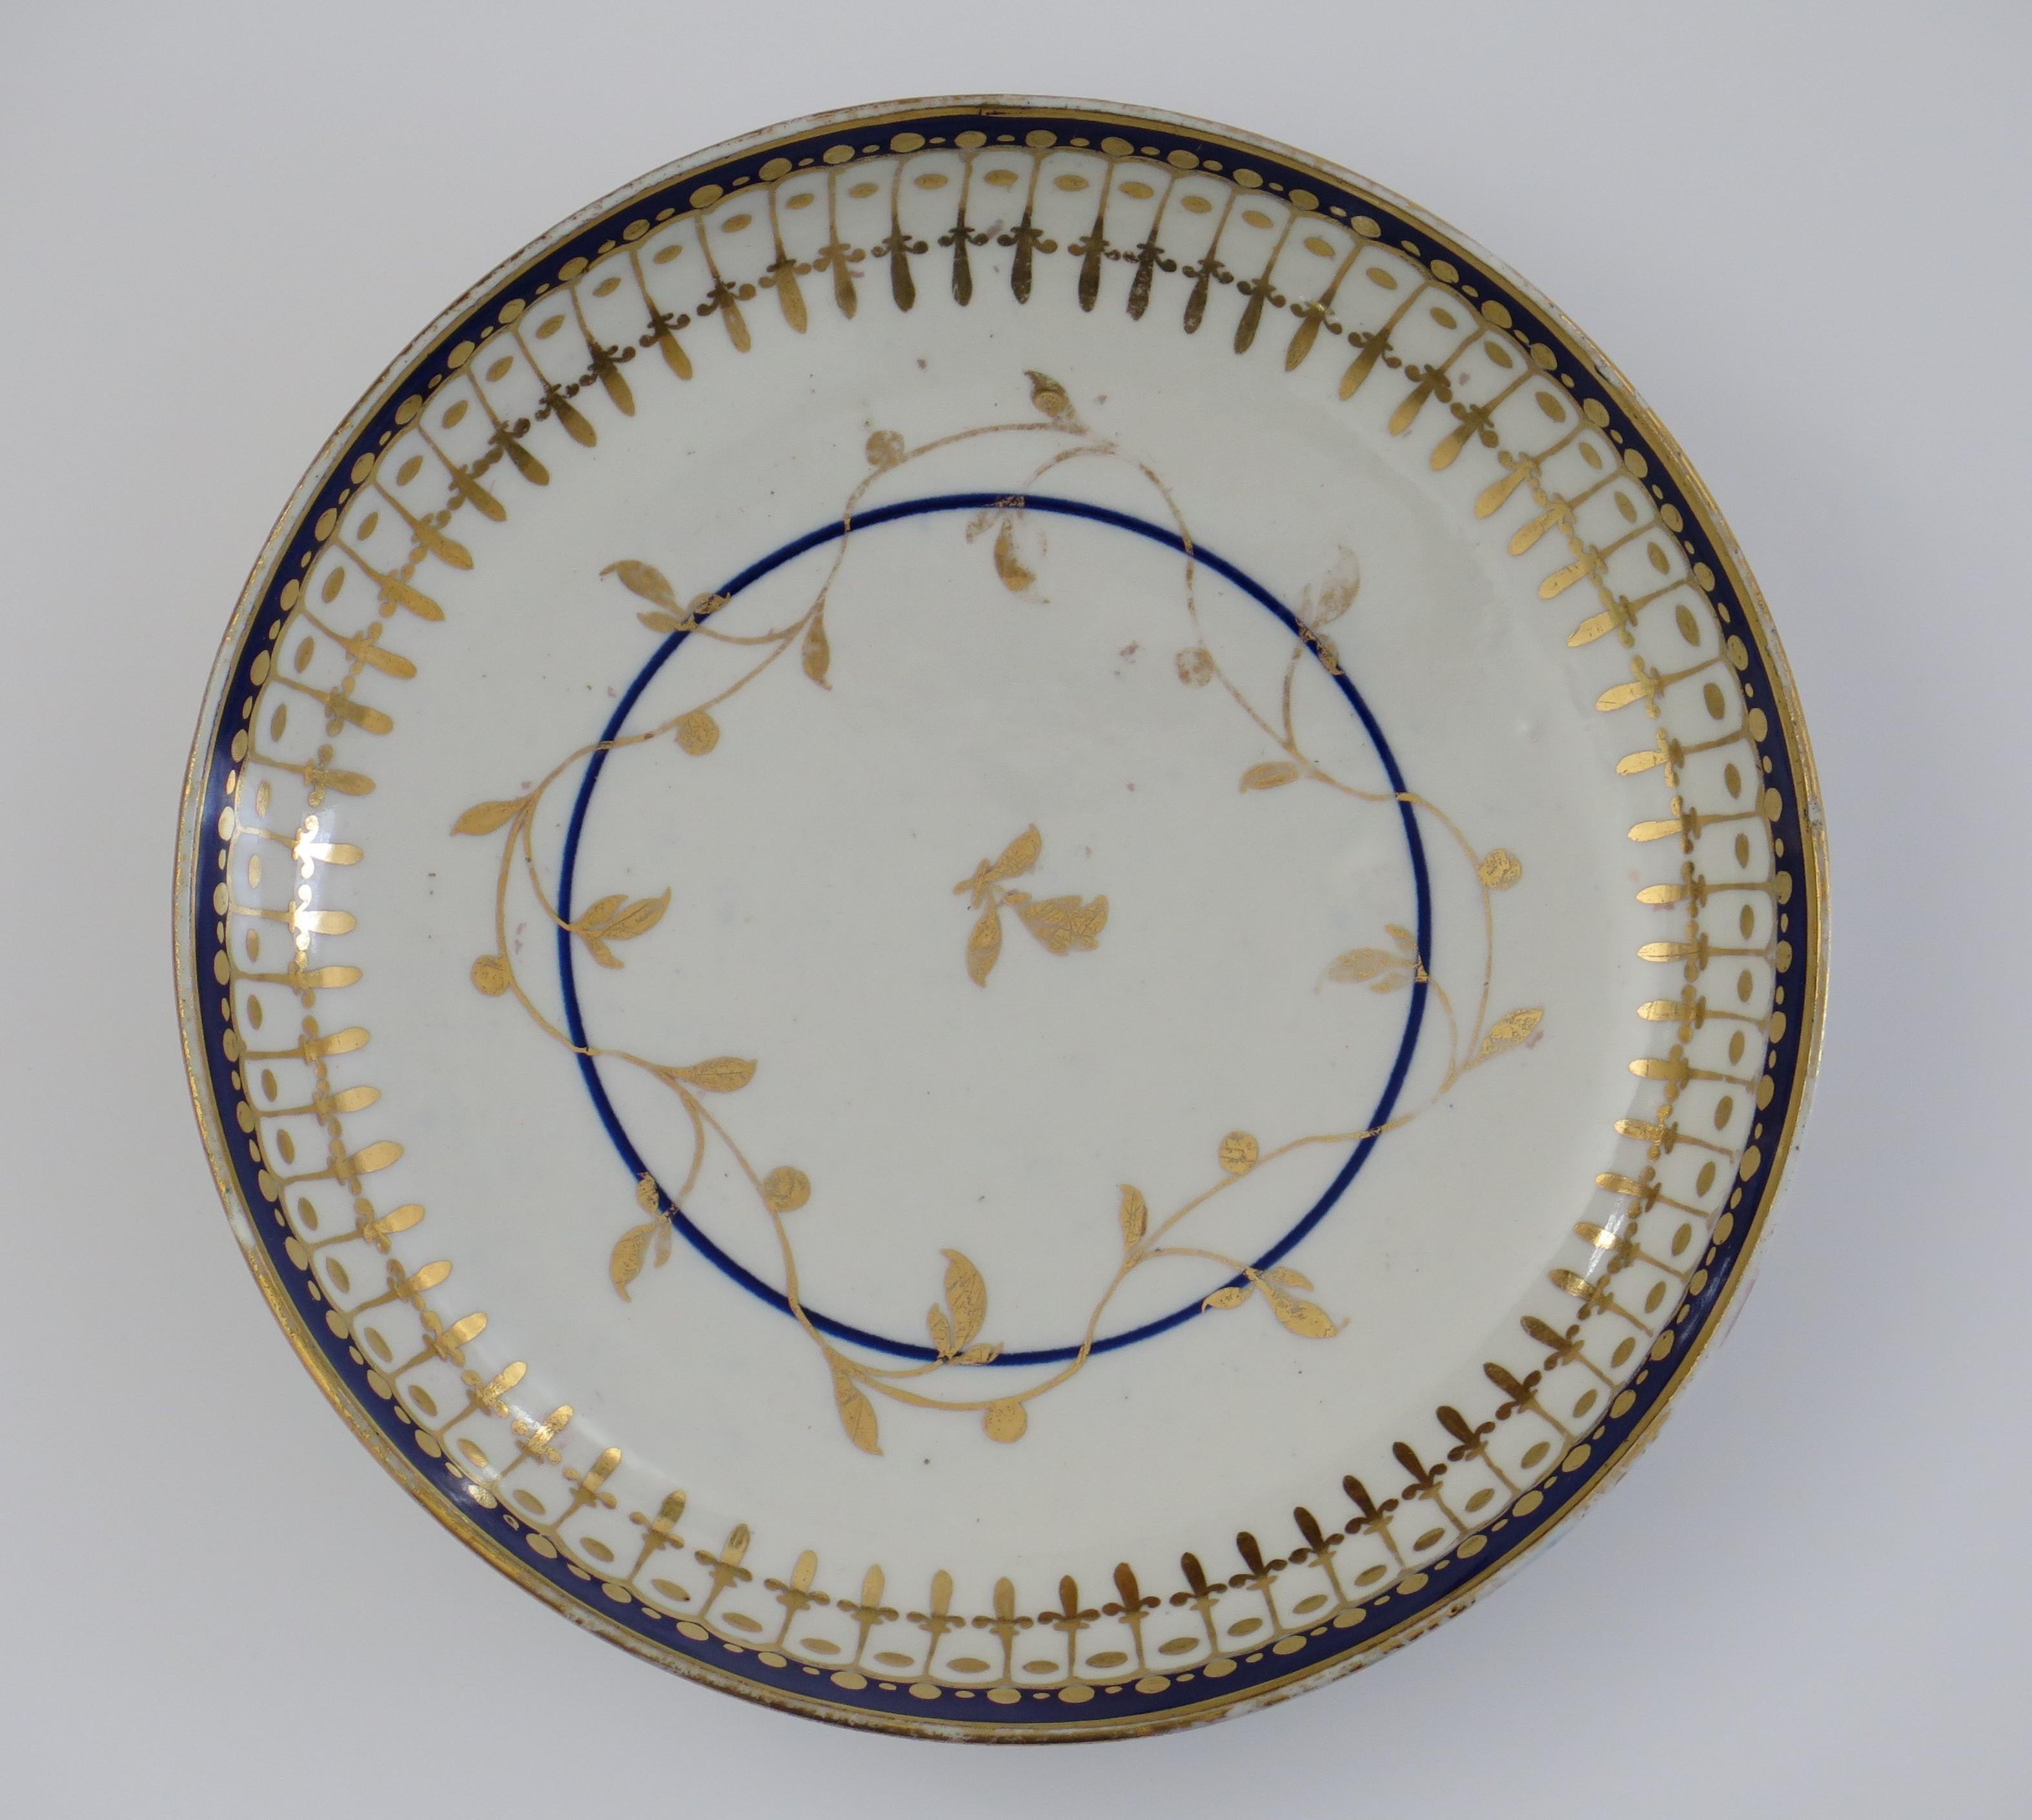 Il s'agit d'un bon bol ou d'une soucoupe en porcelaine de Worcester de la fin du XVIIIe siècle, avec un motif combiné bleu et or, entièrement marqué et datant d'environ 1780.

Le bol est décoré d'un motif classique en bleu sous glaçure avec de l'or